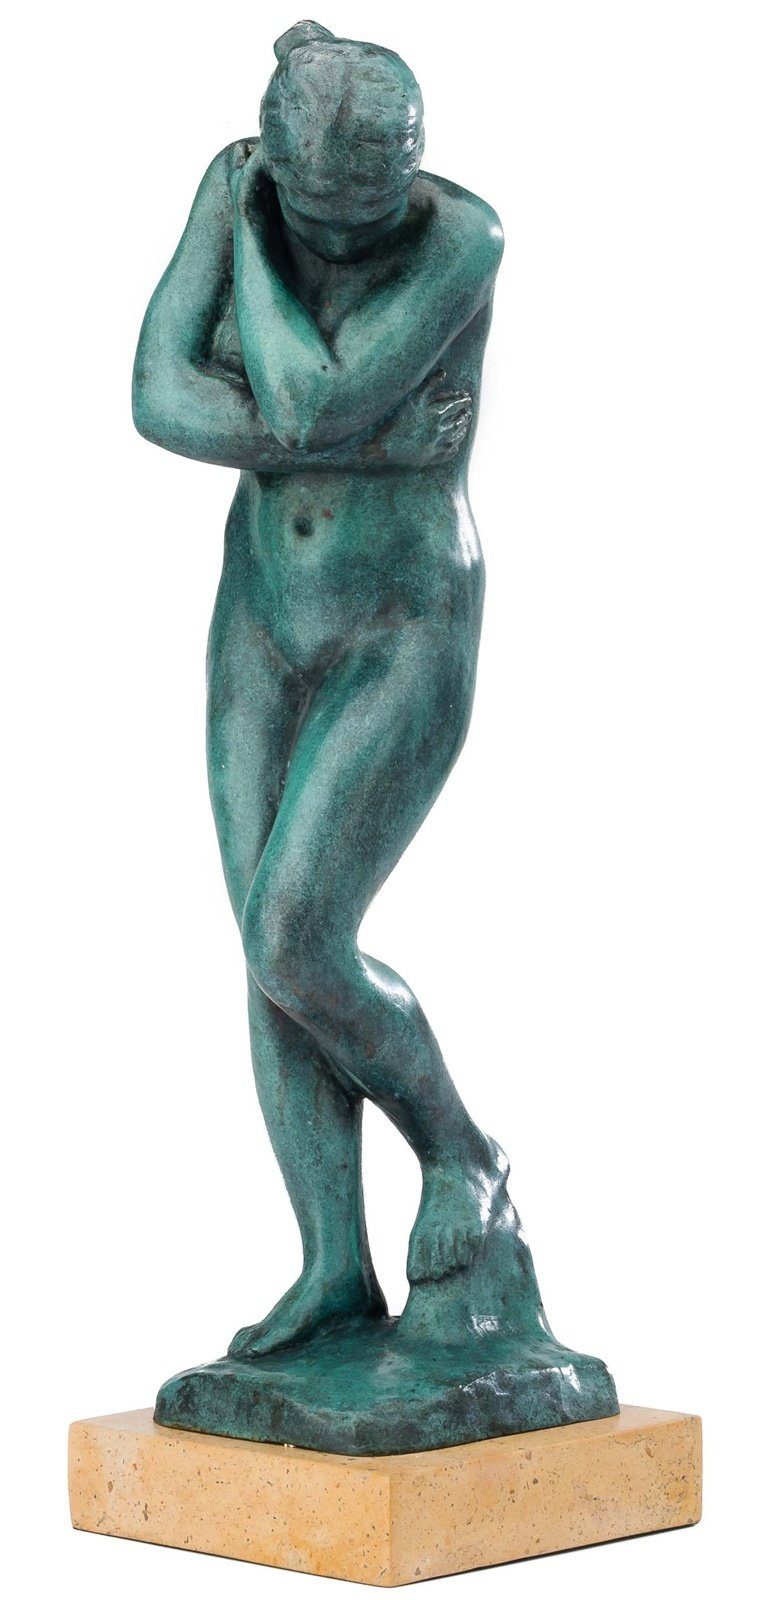 Aubaho Skulptur Bronzeskulptur nach Rodin Bronze Eva Figur Kopie Replik Figur Antik-St